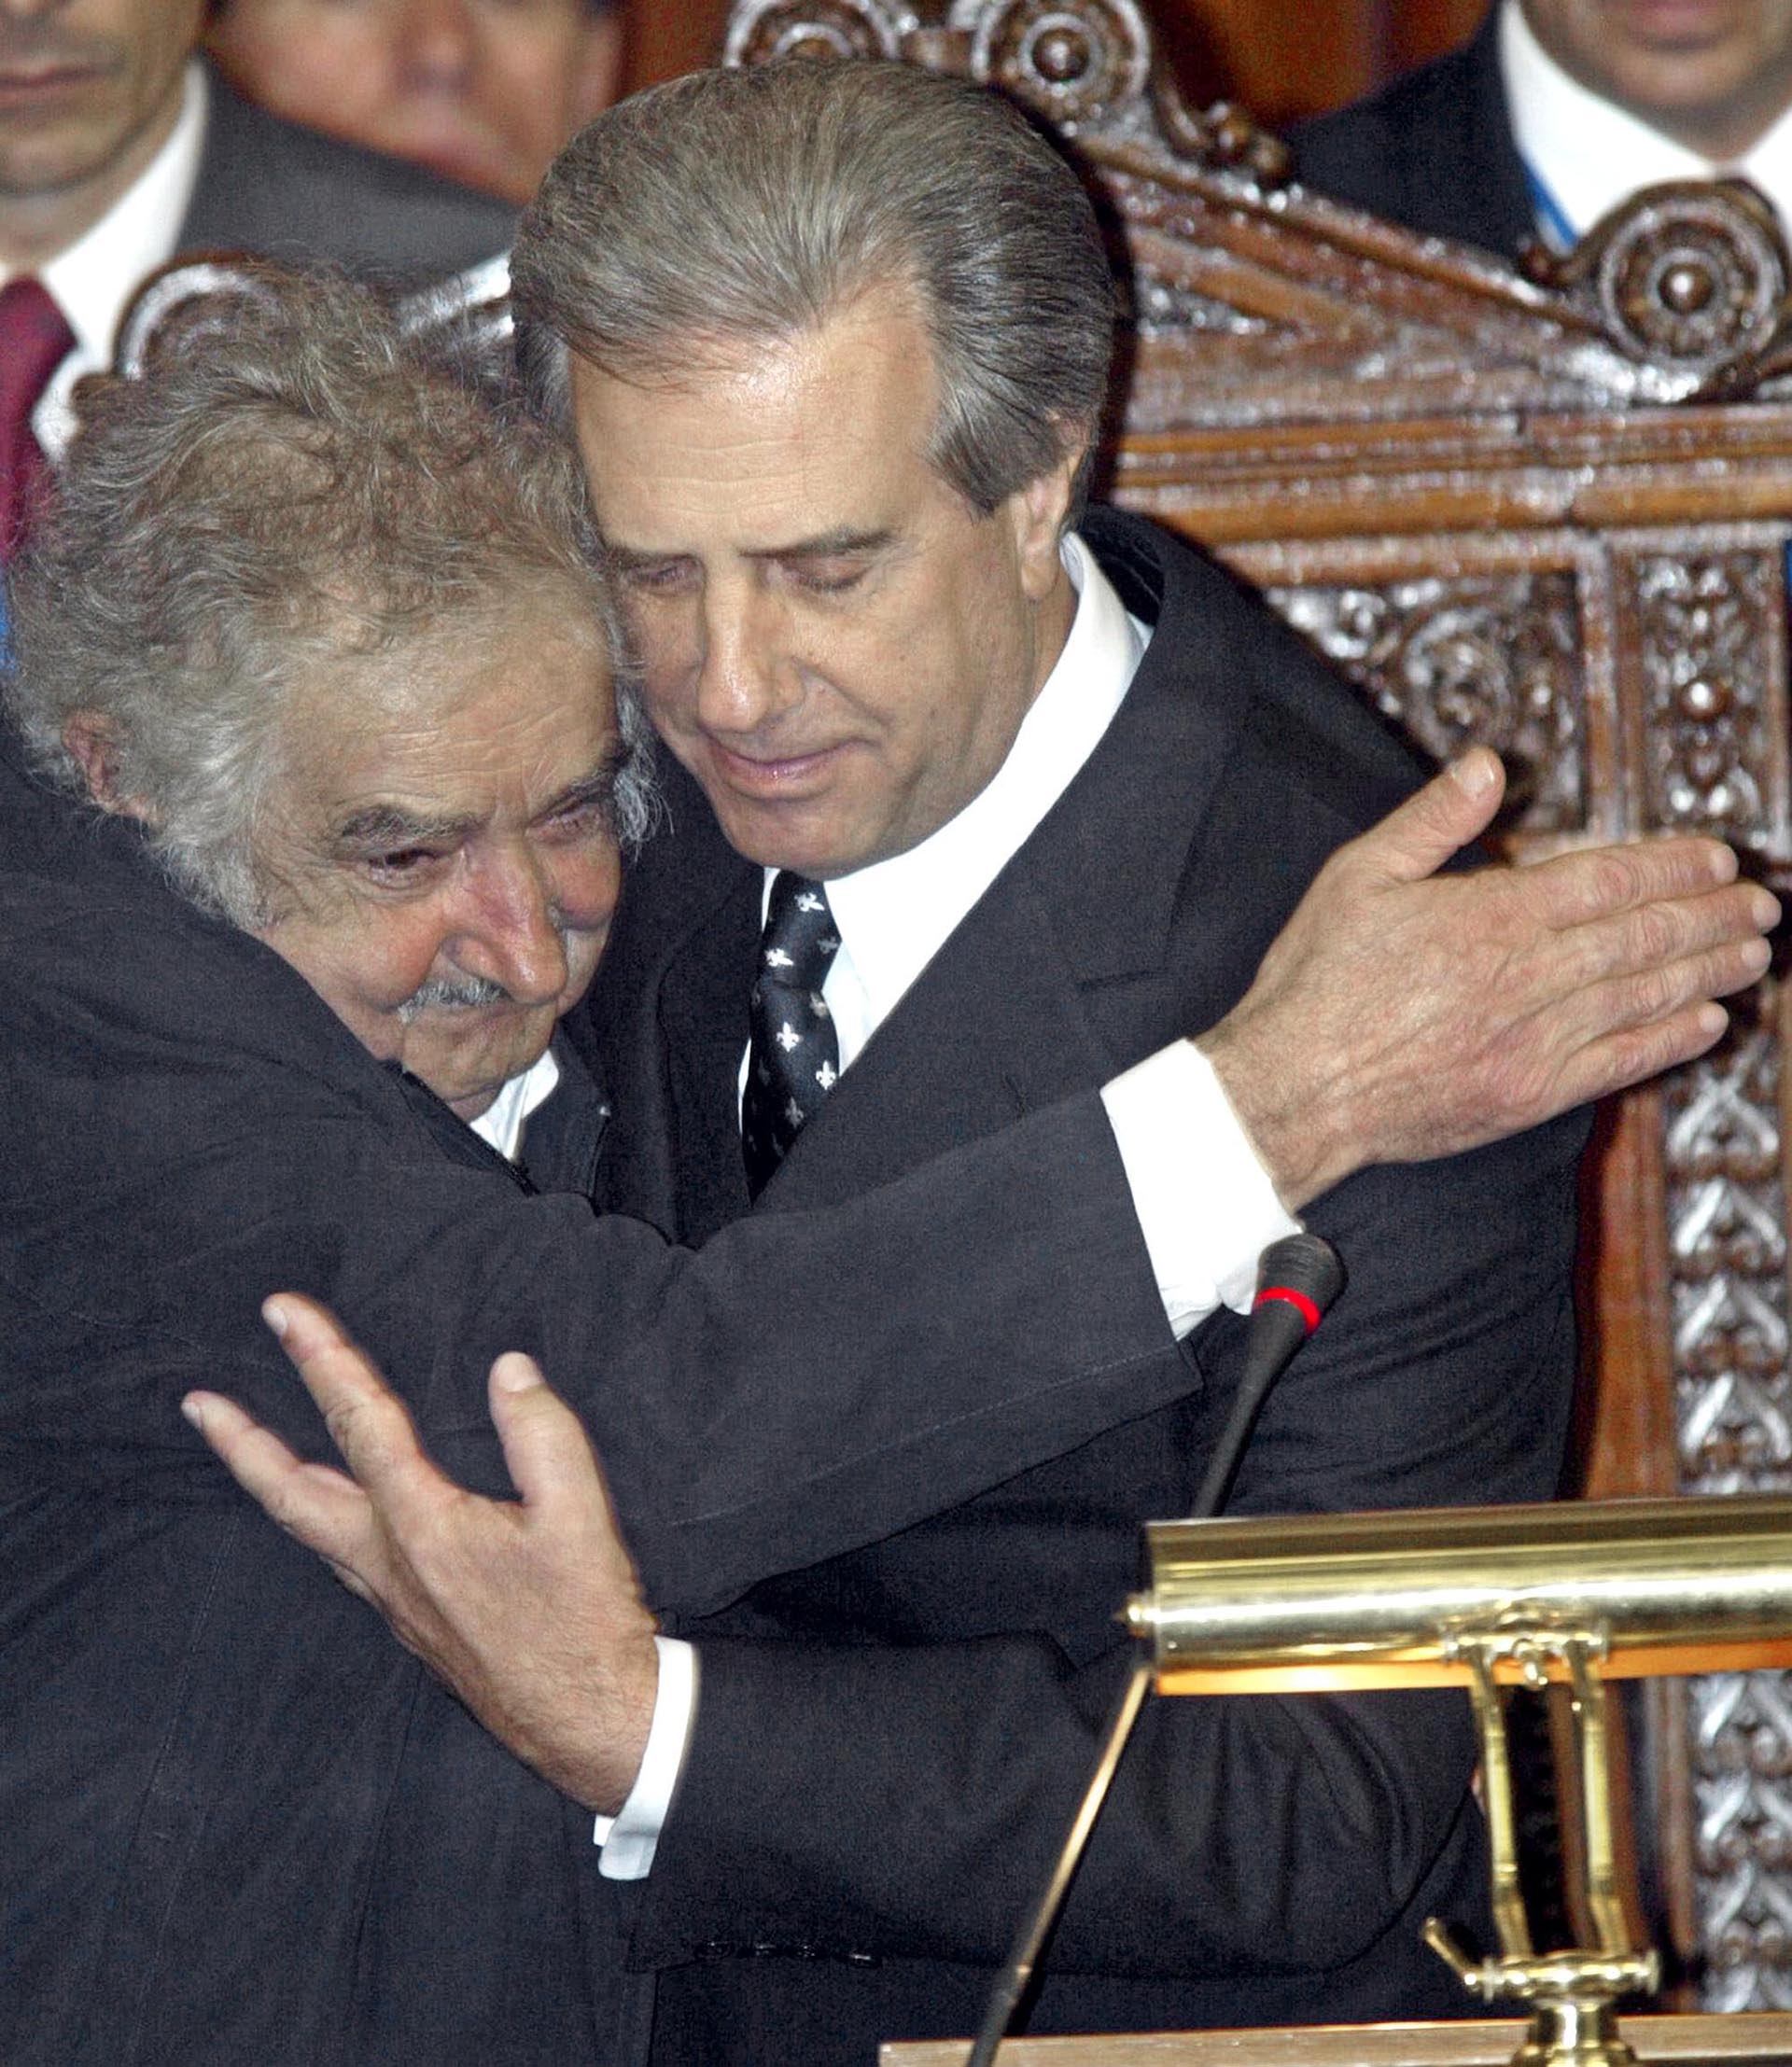 Vázquez abra a José "Pepe" Mujica en la ceremonia de asunción